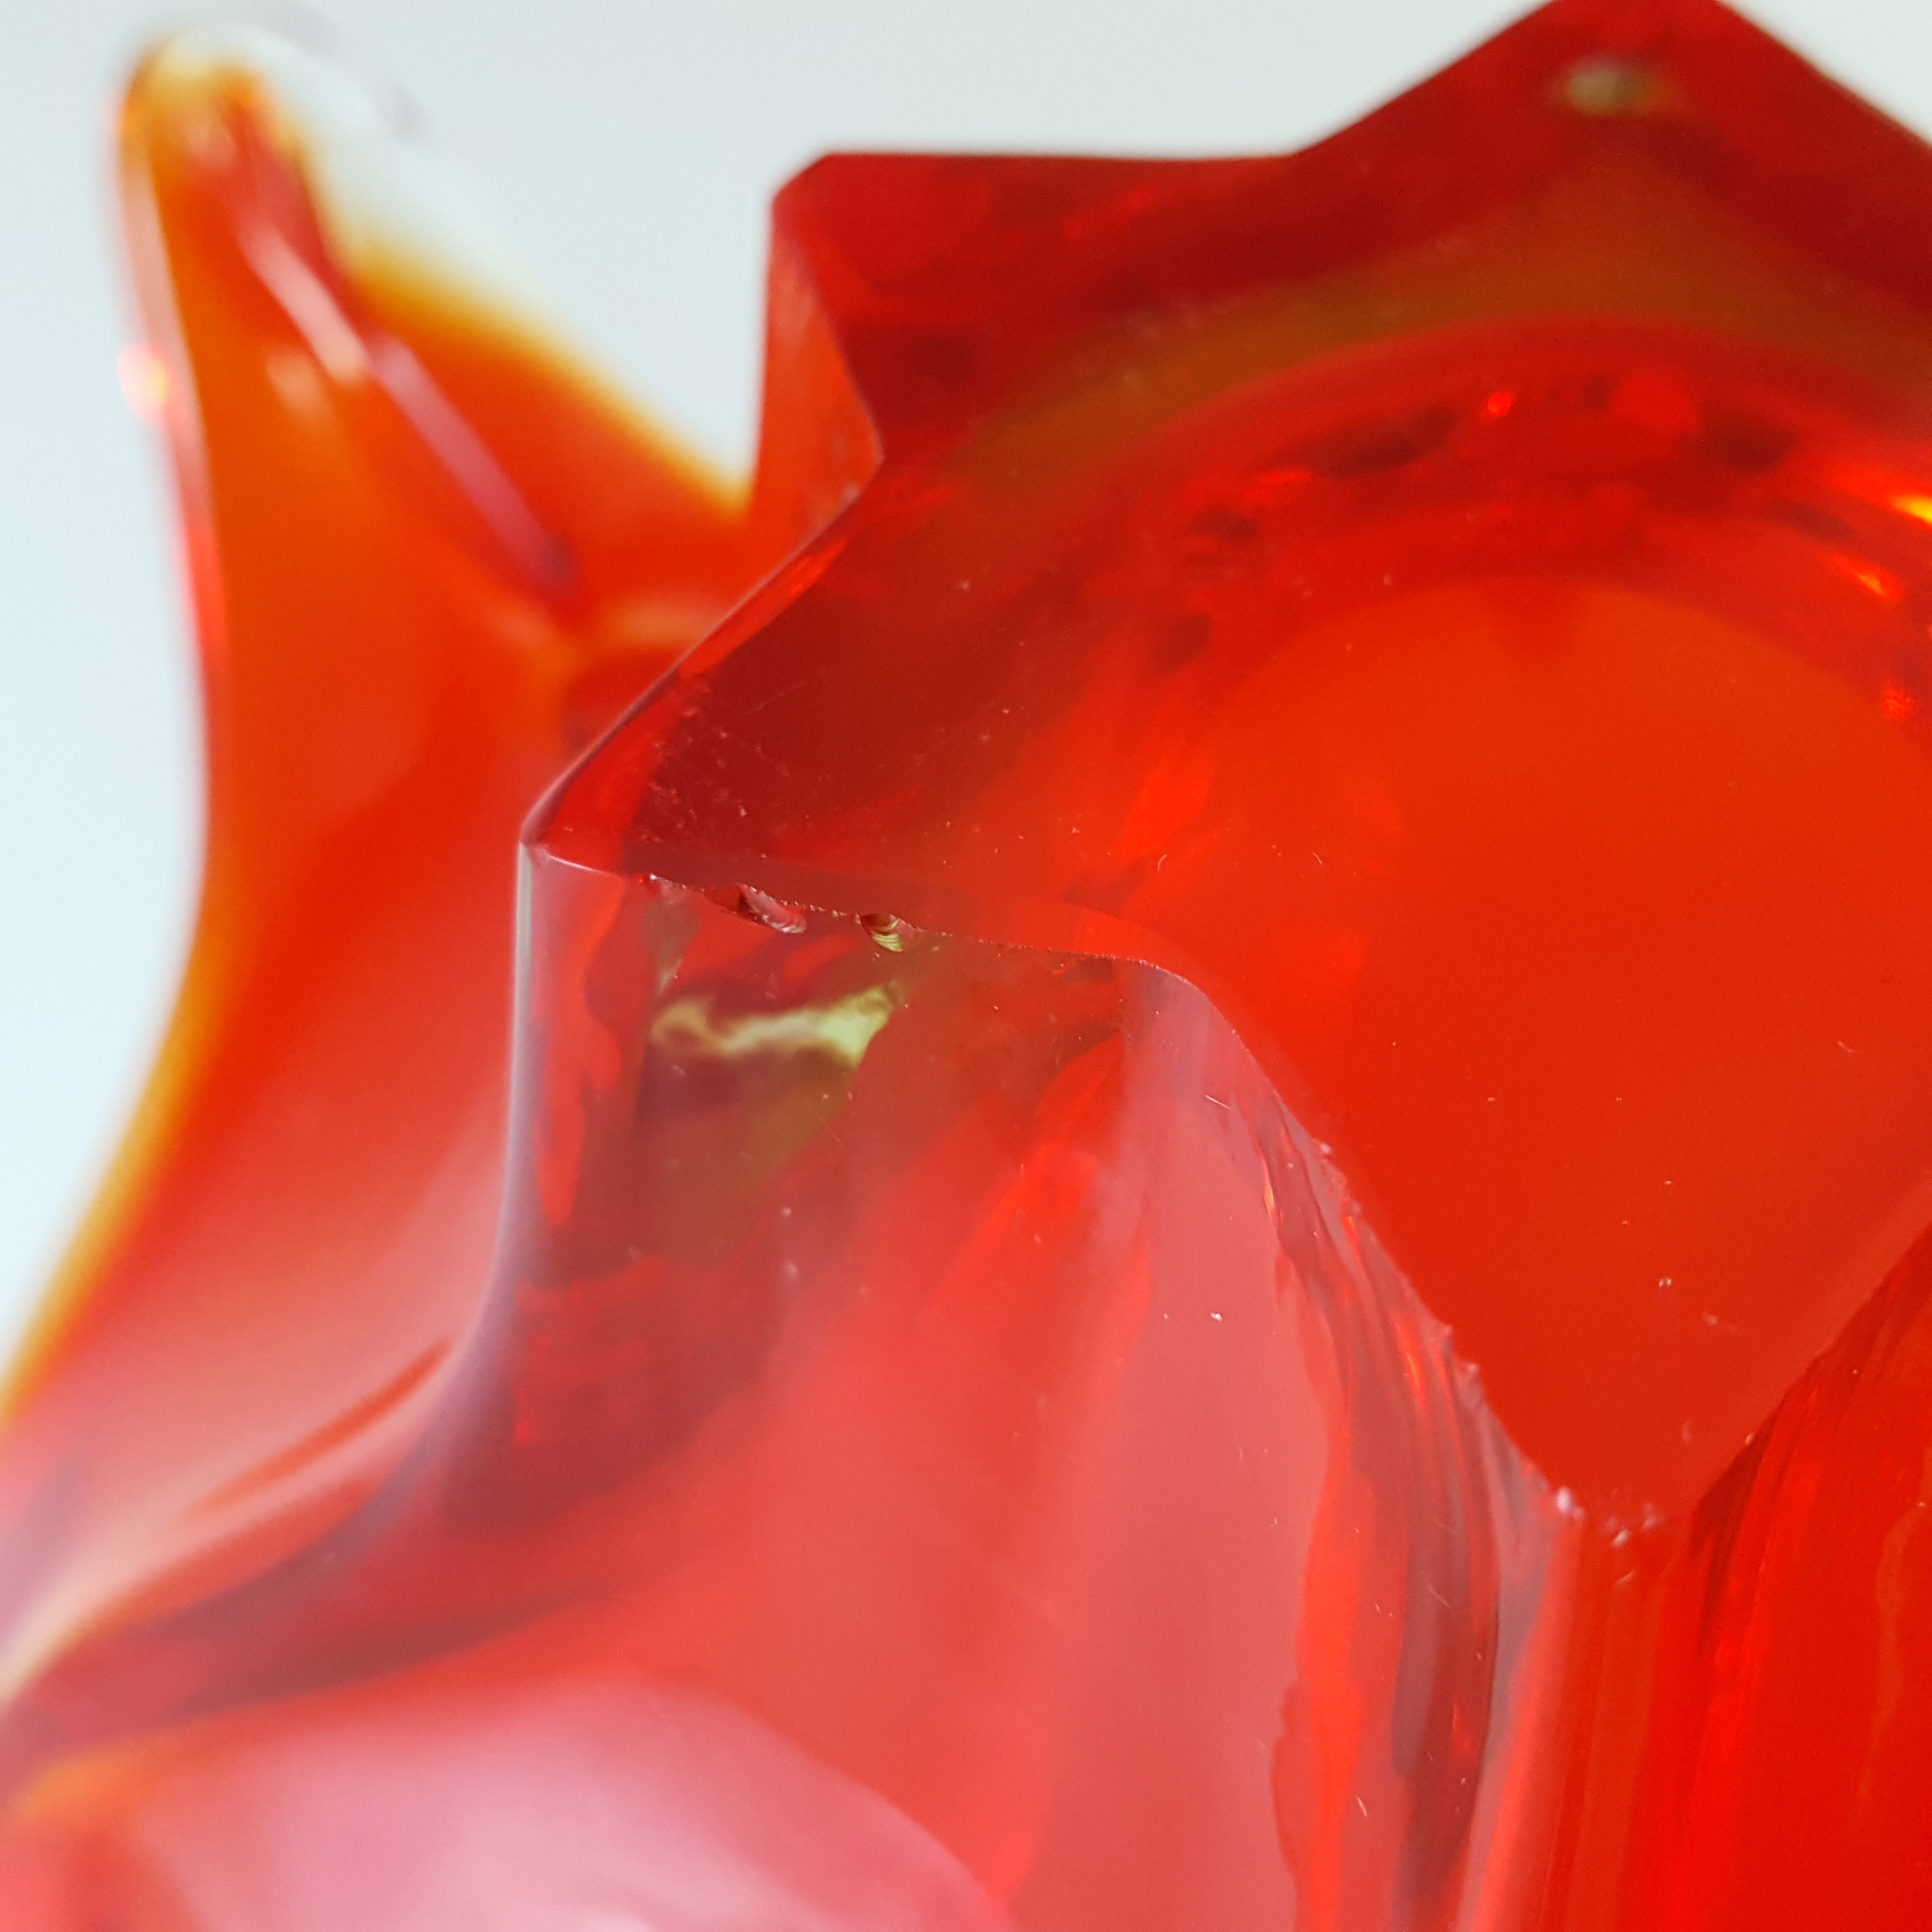 Cristallo Venezia Murano Red & Uranium Green Sommerso Glass Bowl - Click Image to Close